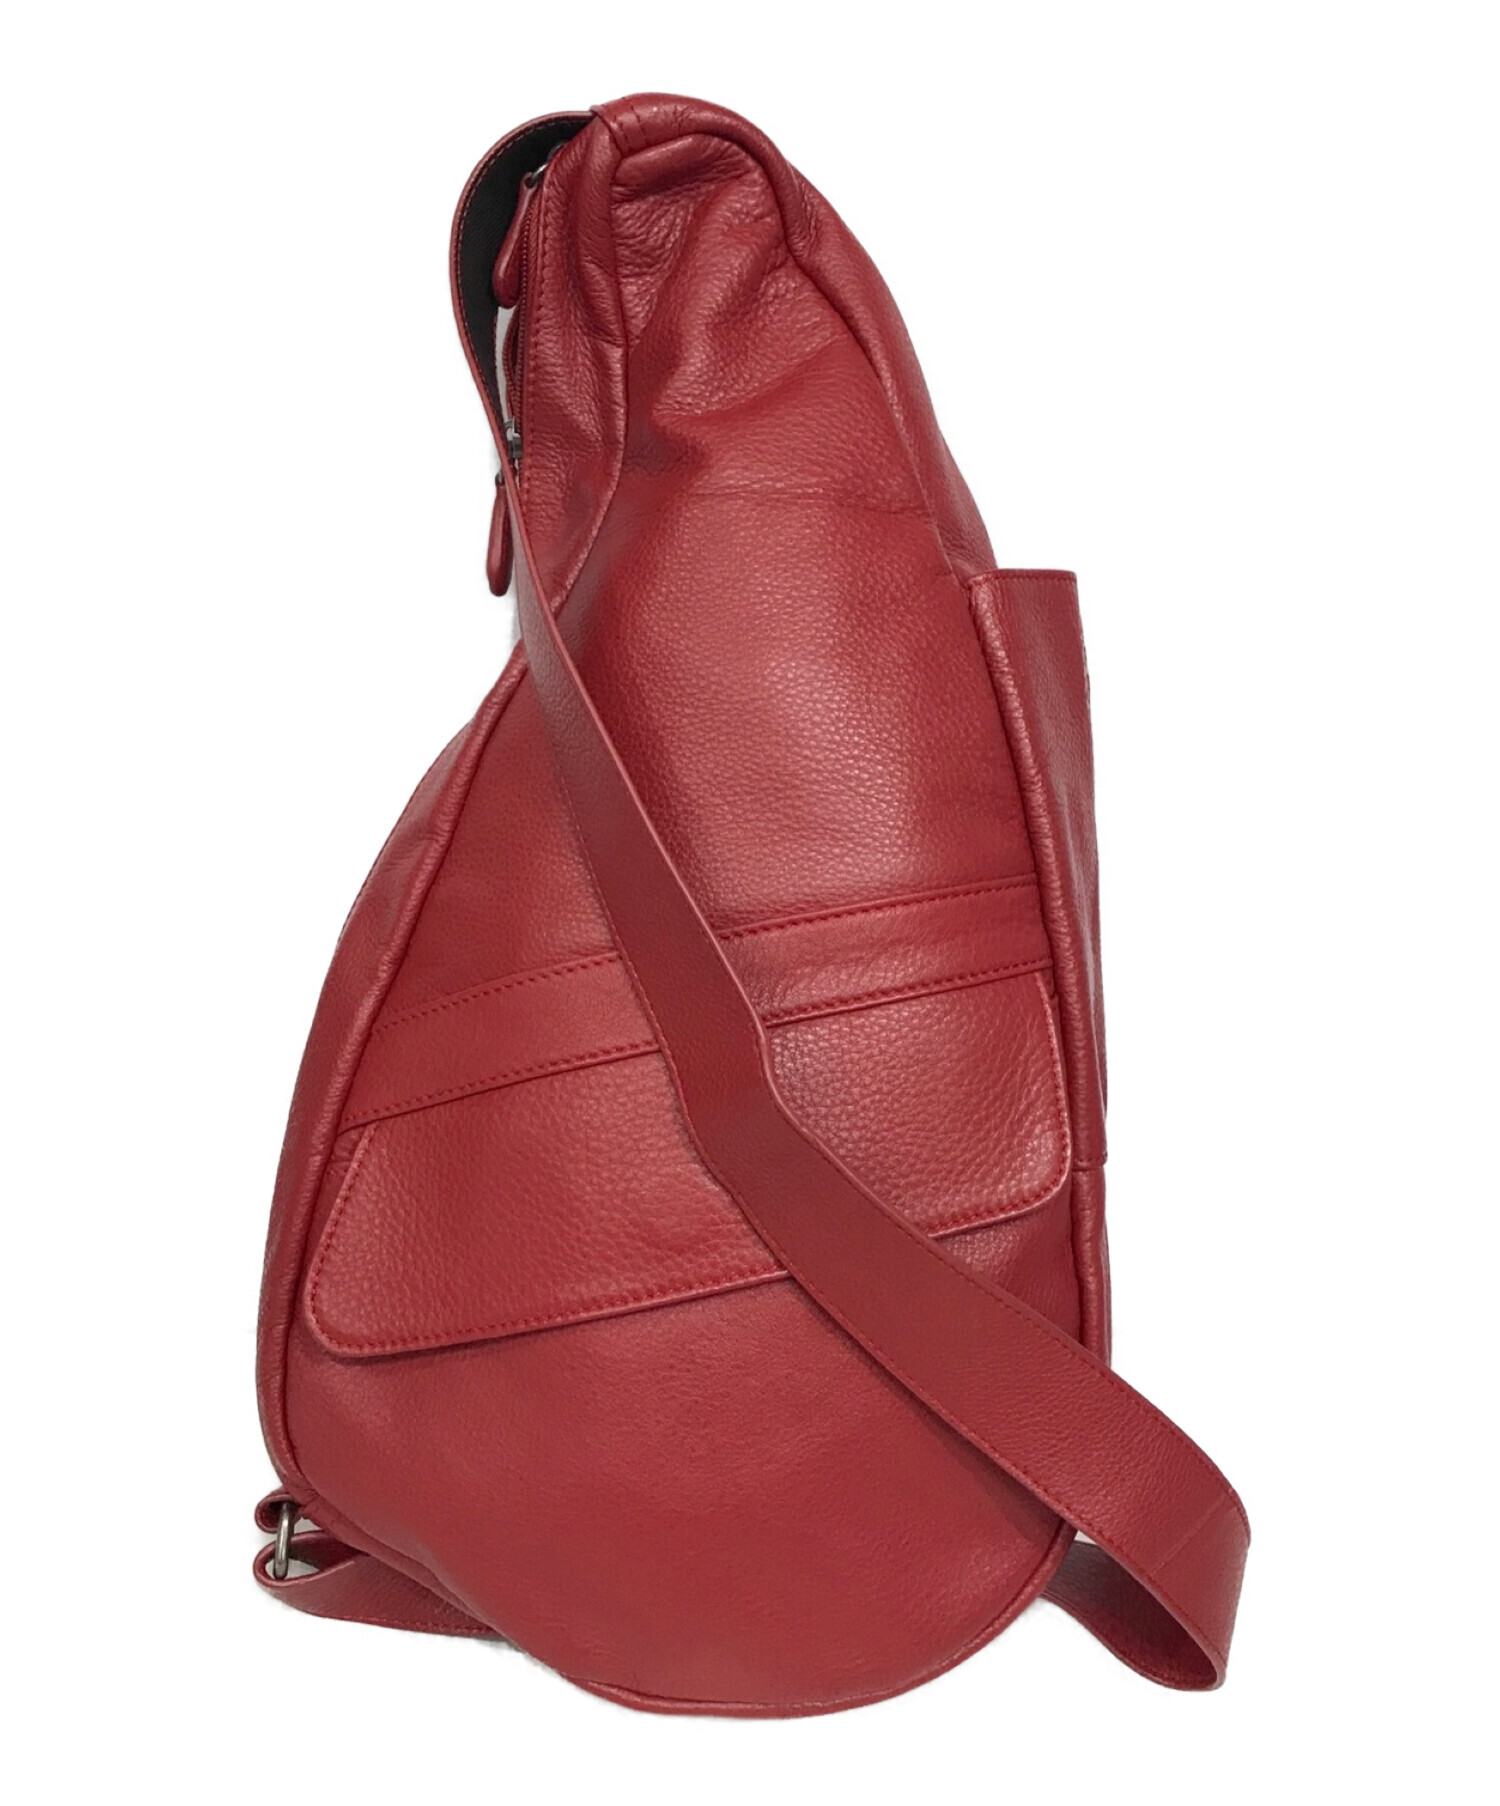 中古・古着通販】healthy back bag (ヘルシーバックバッグ) レザー M